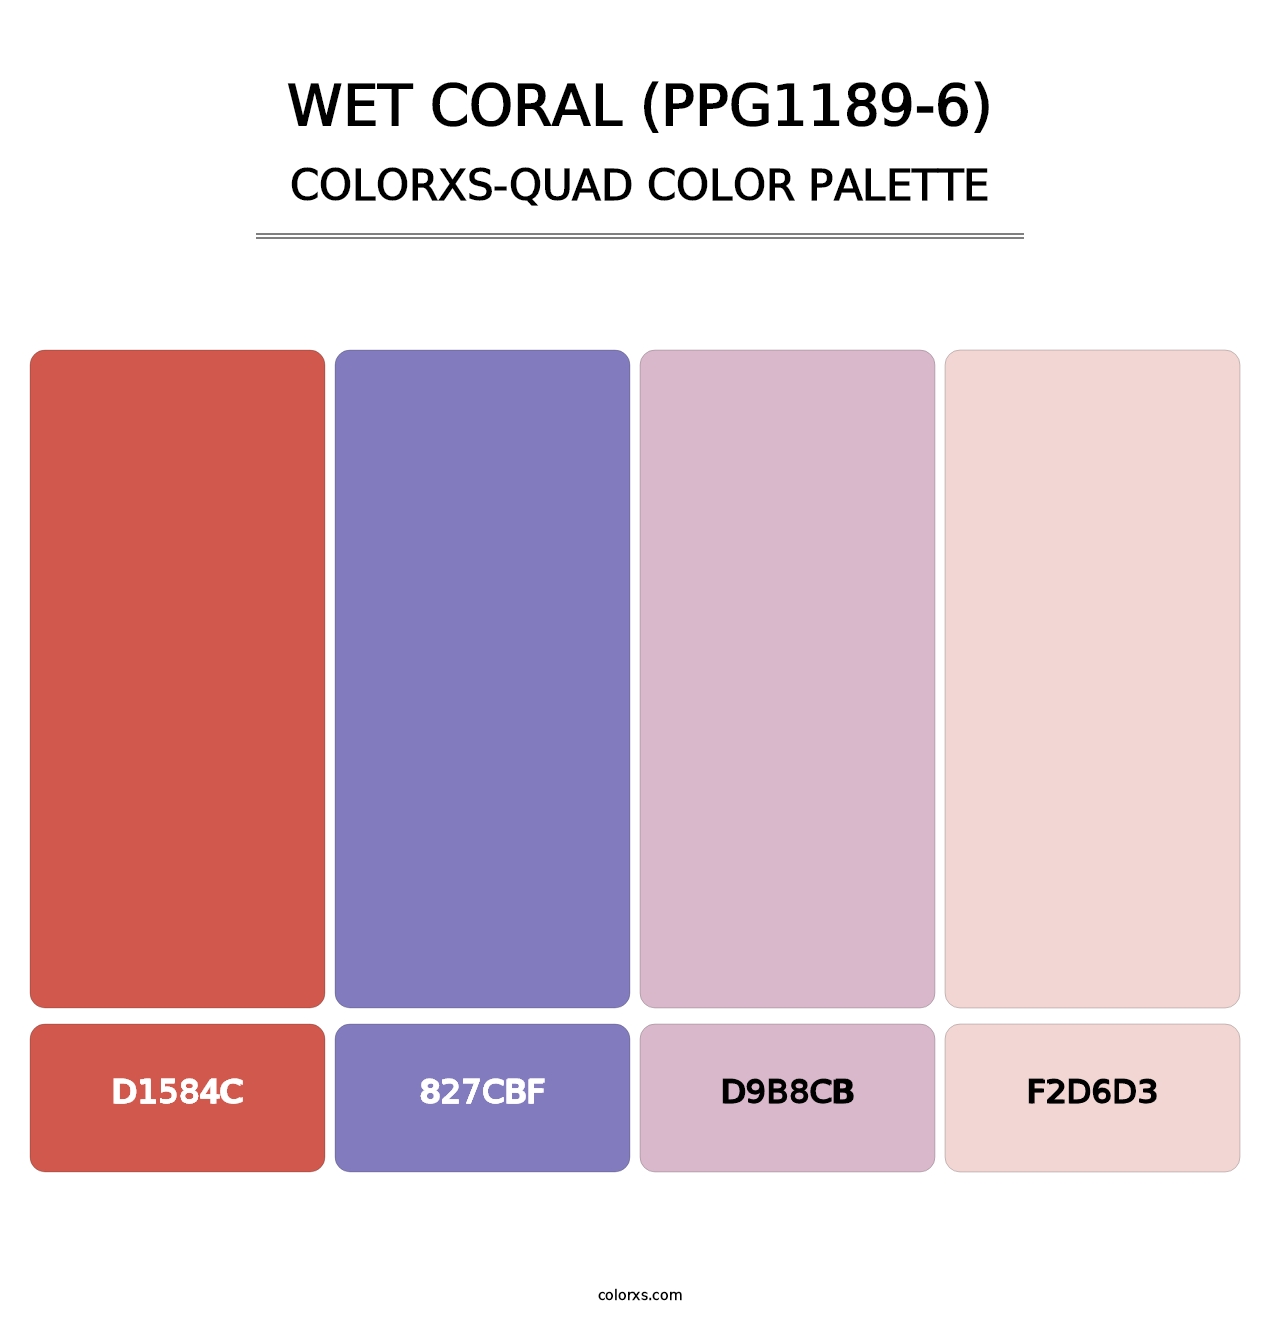 Wet Coral (PPG1189-6) - Colorxs Quad Palette